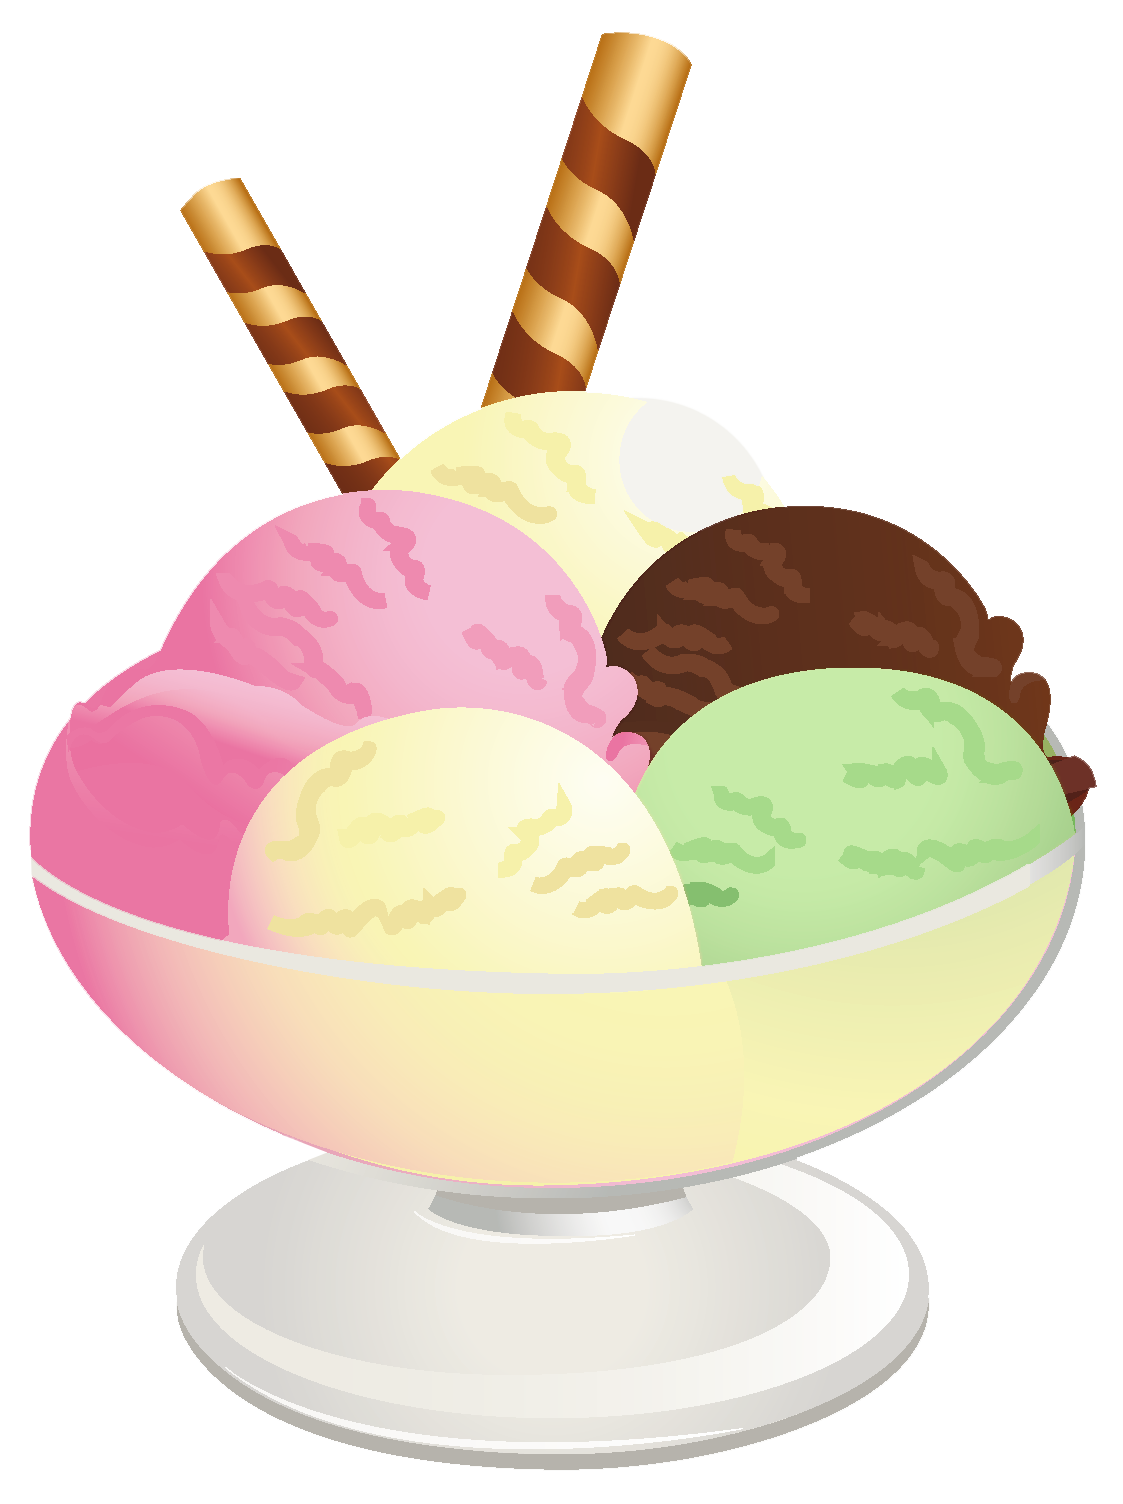 Ice cream sundae clipart clip - Sundae Clip Art